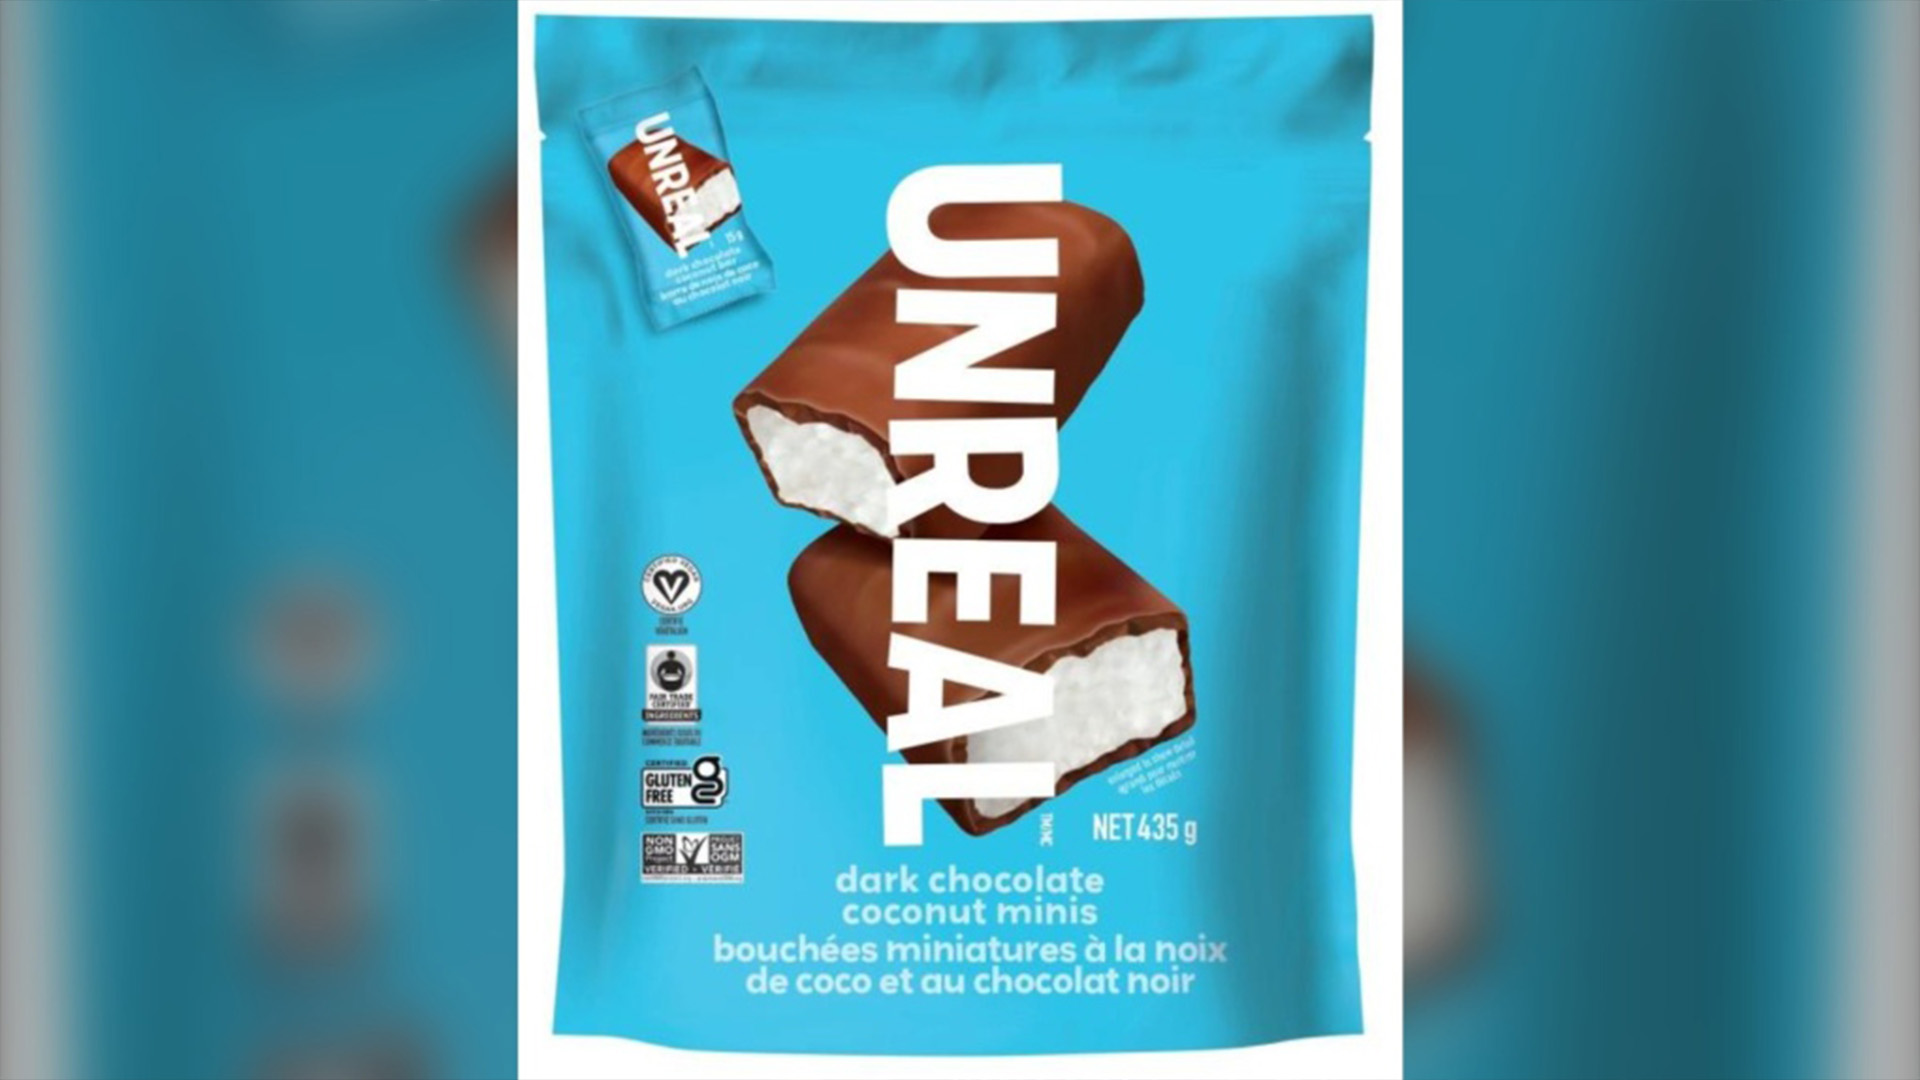 L'Agence canadienne d'inspection des aliments (ACIA) a émis un rappel pour les noix de coco au chocolat noir de la marque Unreal en raison d'une possible contamination de salmonelle.